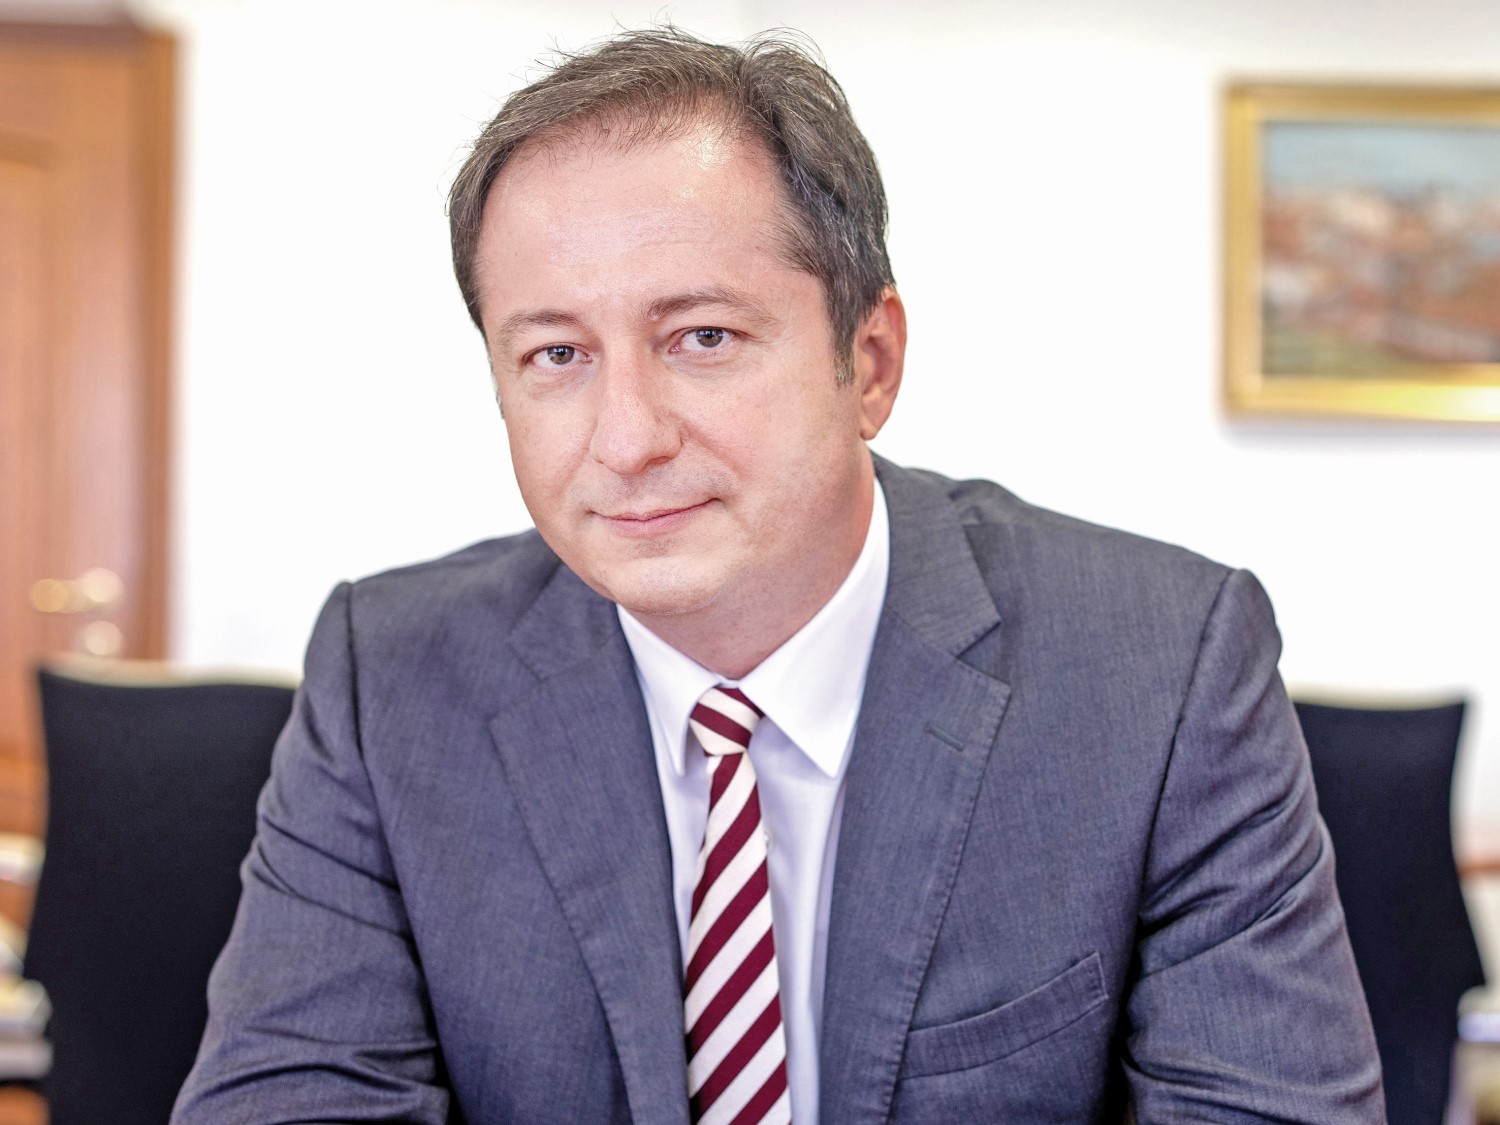 Dan Armeanu, Vicepreşedinte ASF: Sistemul de pensii private a avut cel mai important rol în listarea Hidroelectrica. Fondurile de pensii au subscris aproape jumătate din IPO (46,85%), ceea ce reprezintă în jur de 10% din capitalul social al Hidroelectrica şi au asigurat listarea integrală numai în România